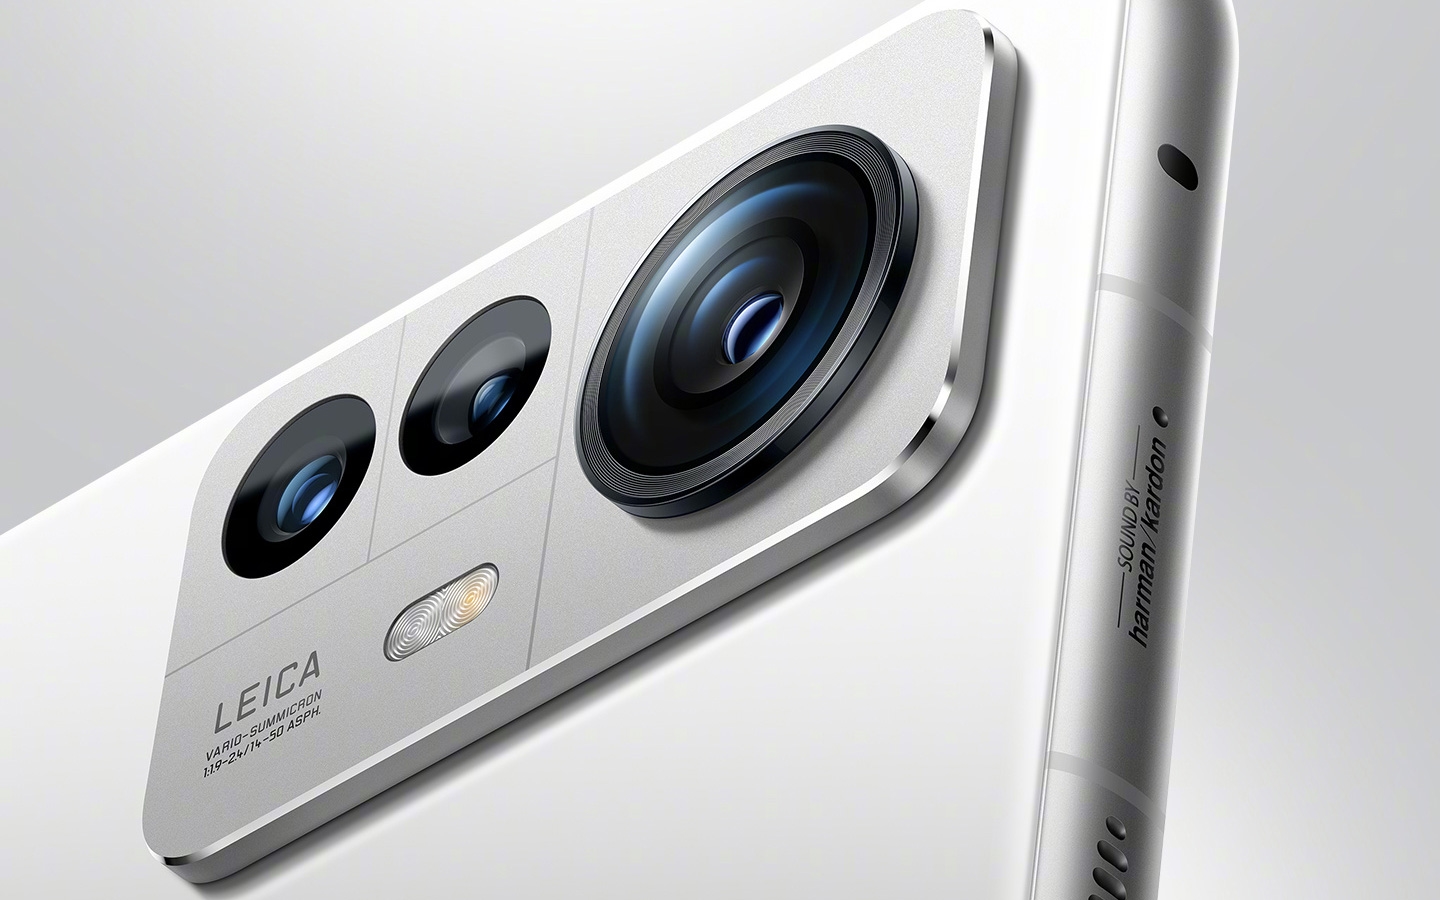 Xiaomi 12S Ultra has a Leica camera with a massive 1-inch sensor | DeviceDaily.com